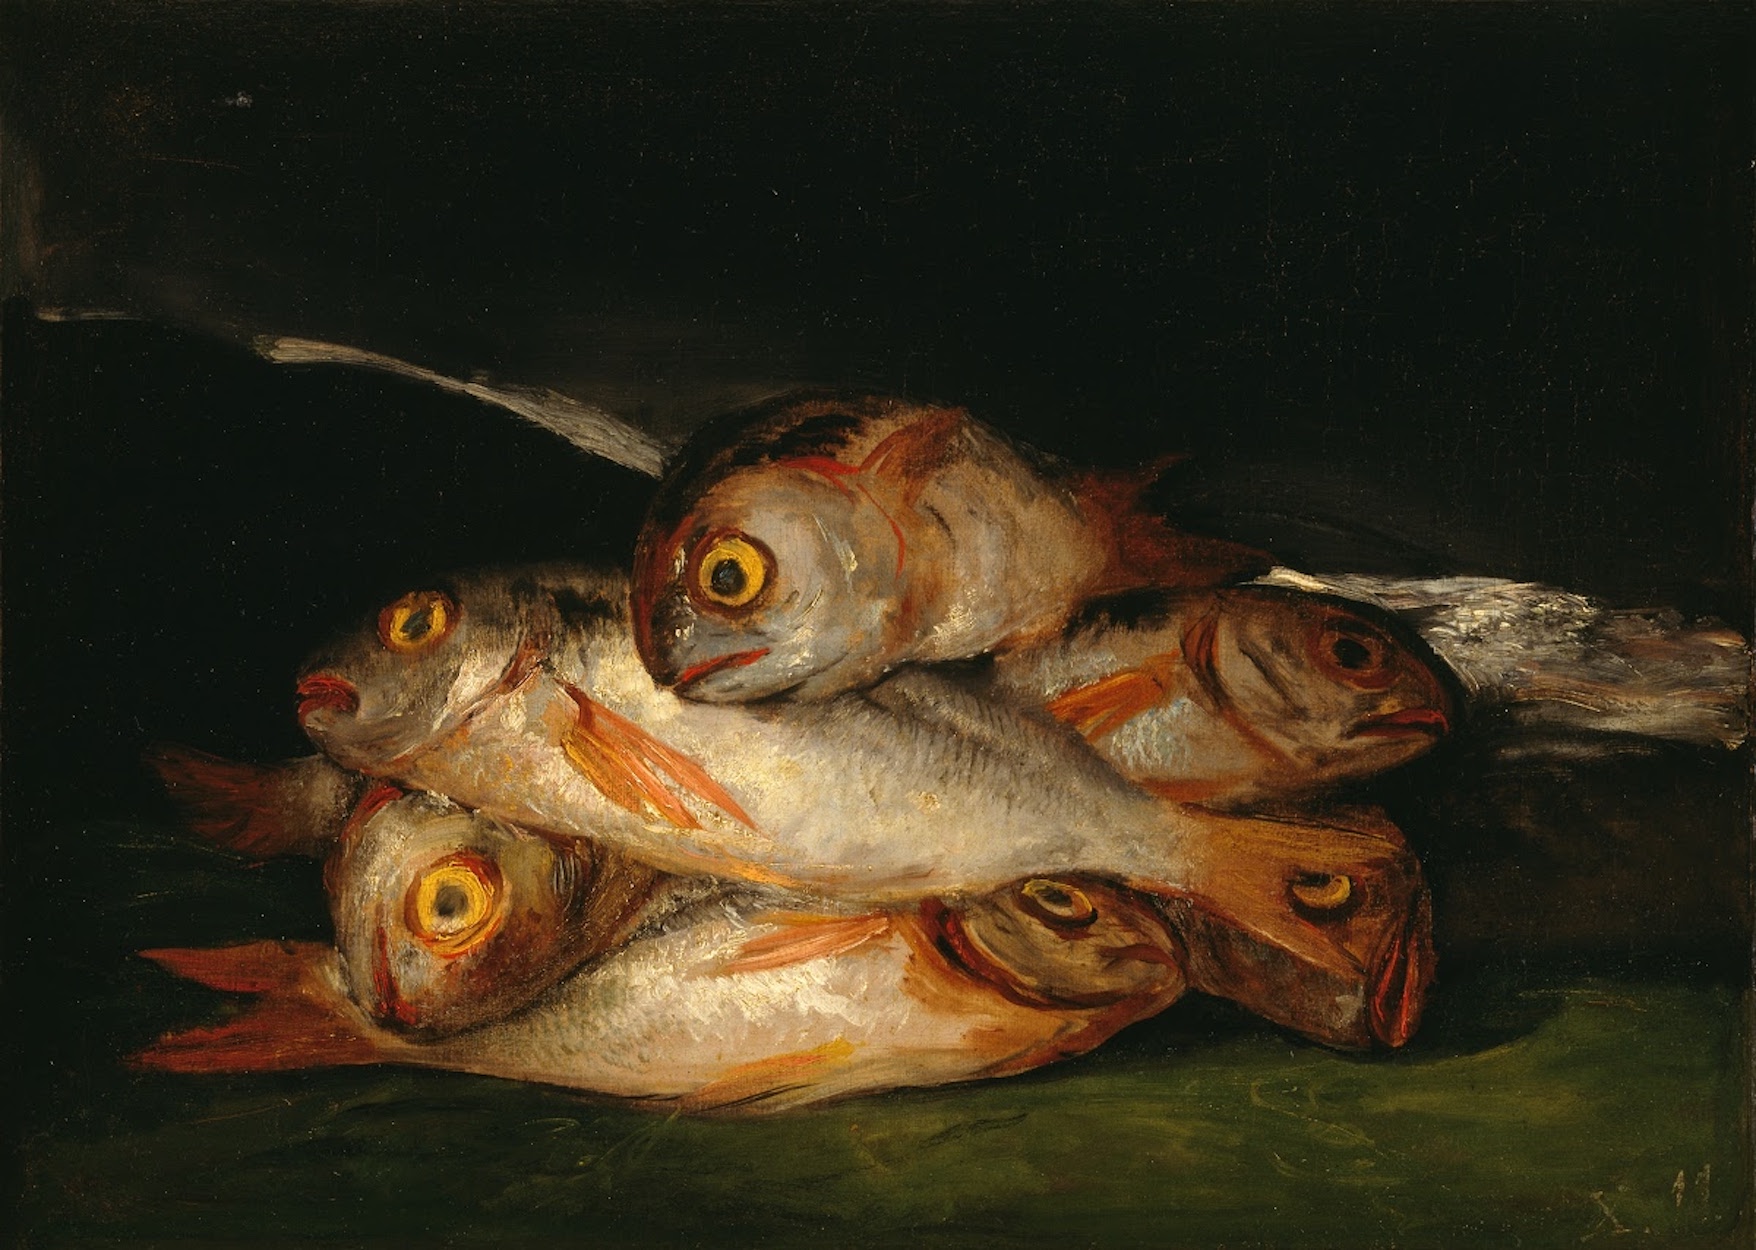 繪有金鯛的靜物 by Francisco Goya - 1808 年至 1812 年 - 62.5 x 44.8 釐米 